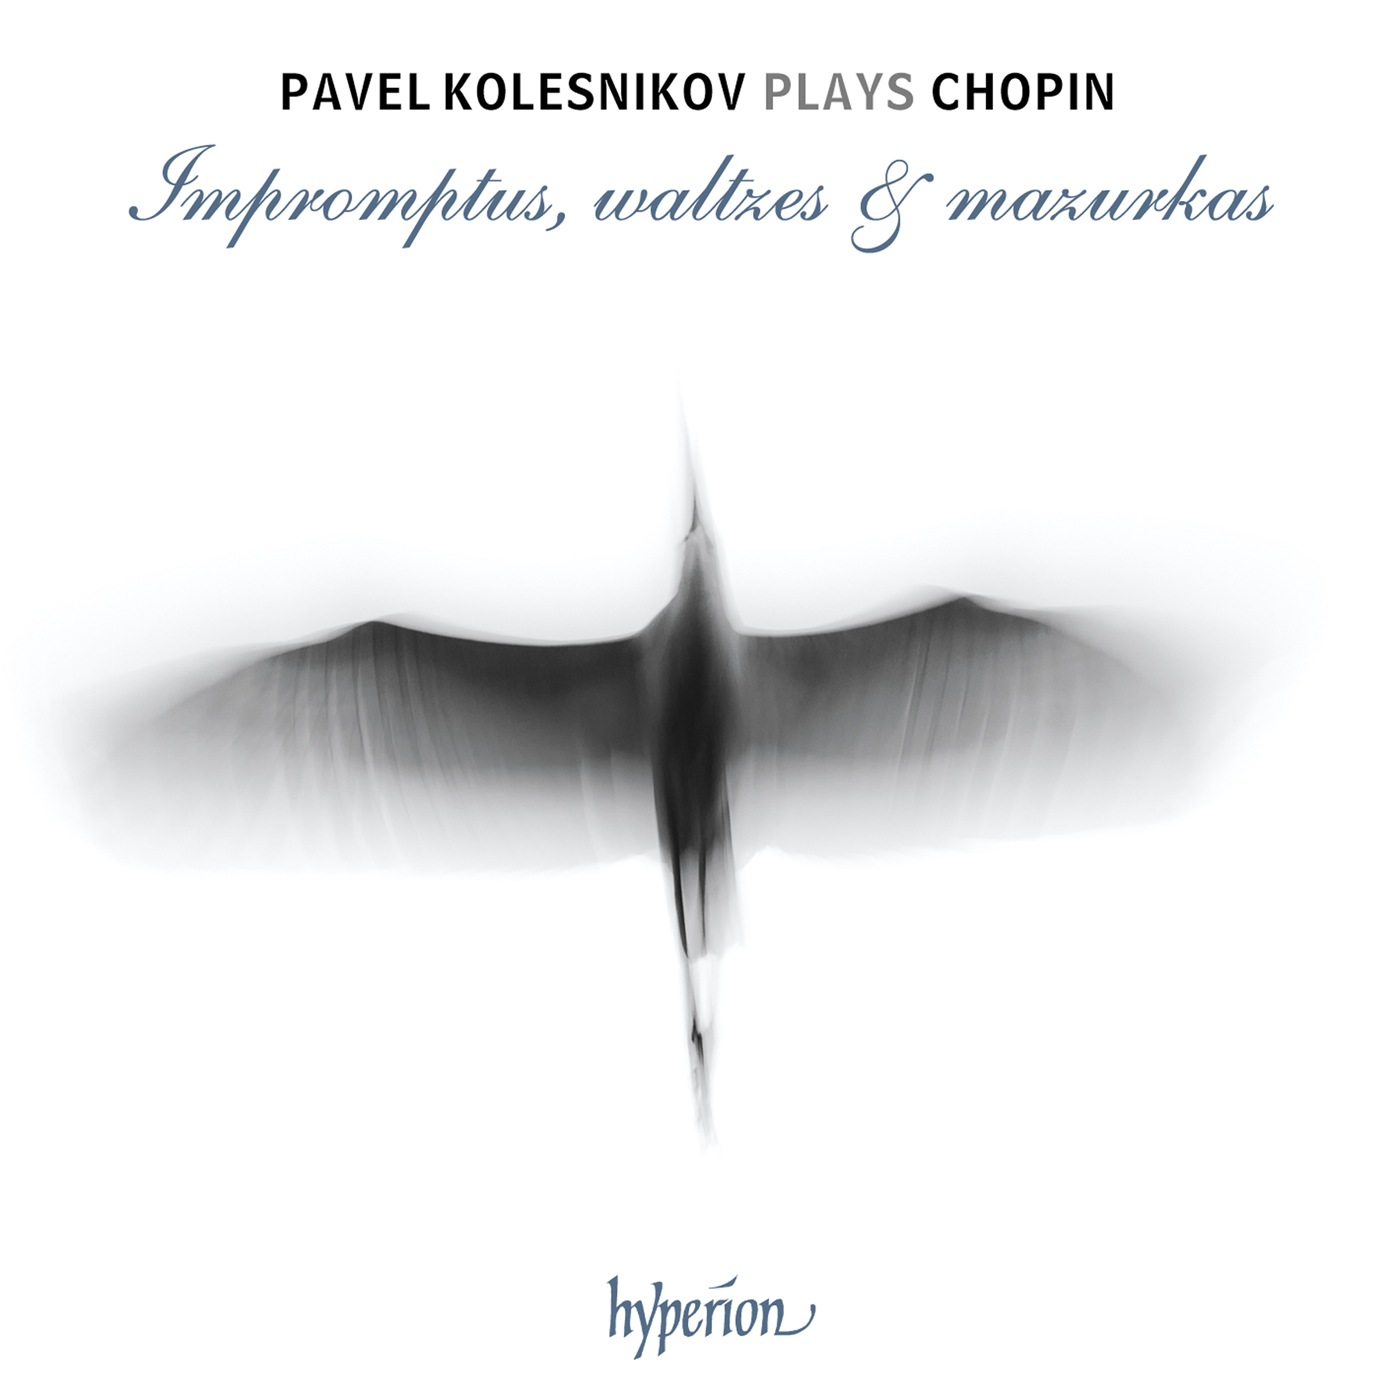 Chopin: Impromptus, waltzes & mazurkas